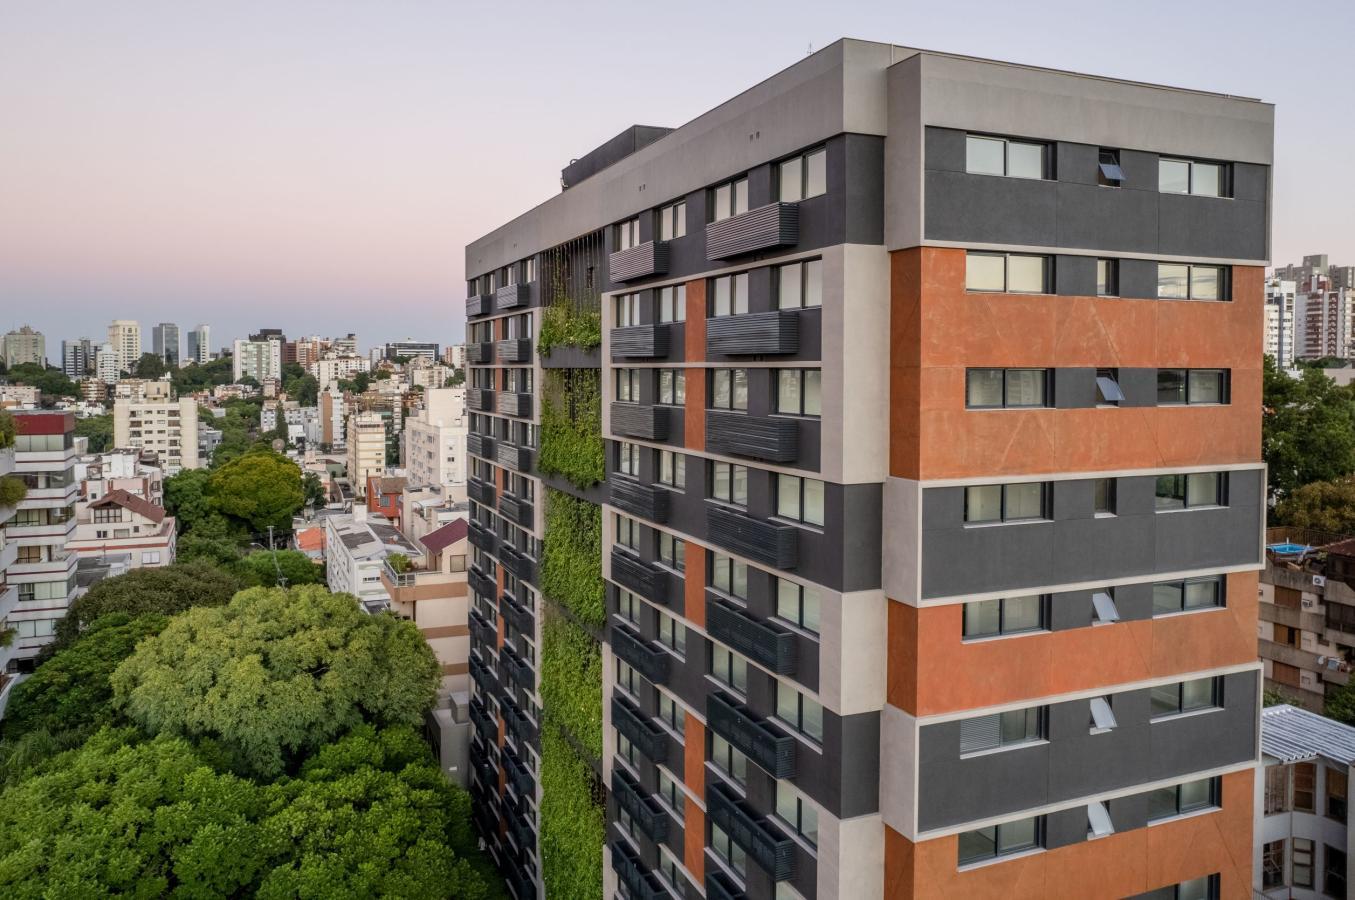 Ab645  Menino Deus, Porto Alegre - Foxter Imobiliária